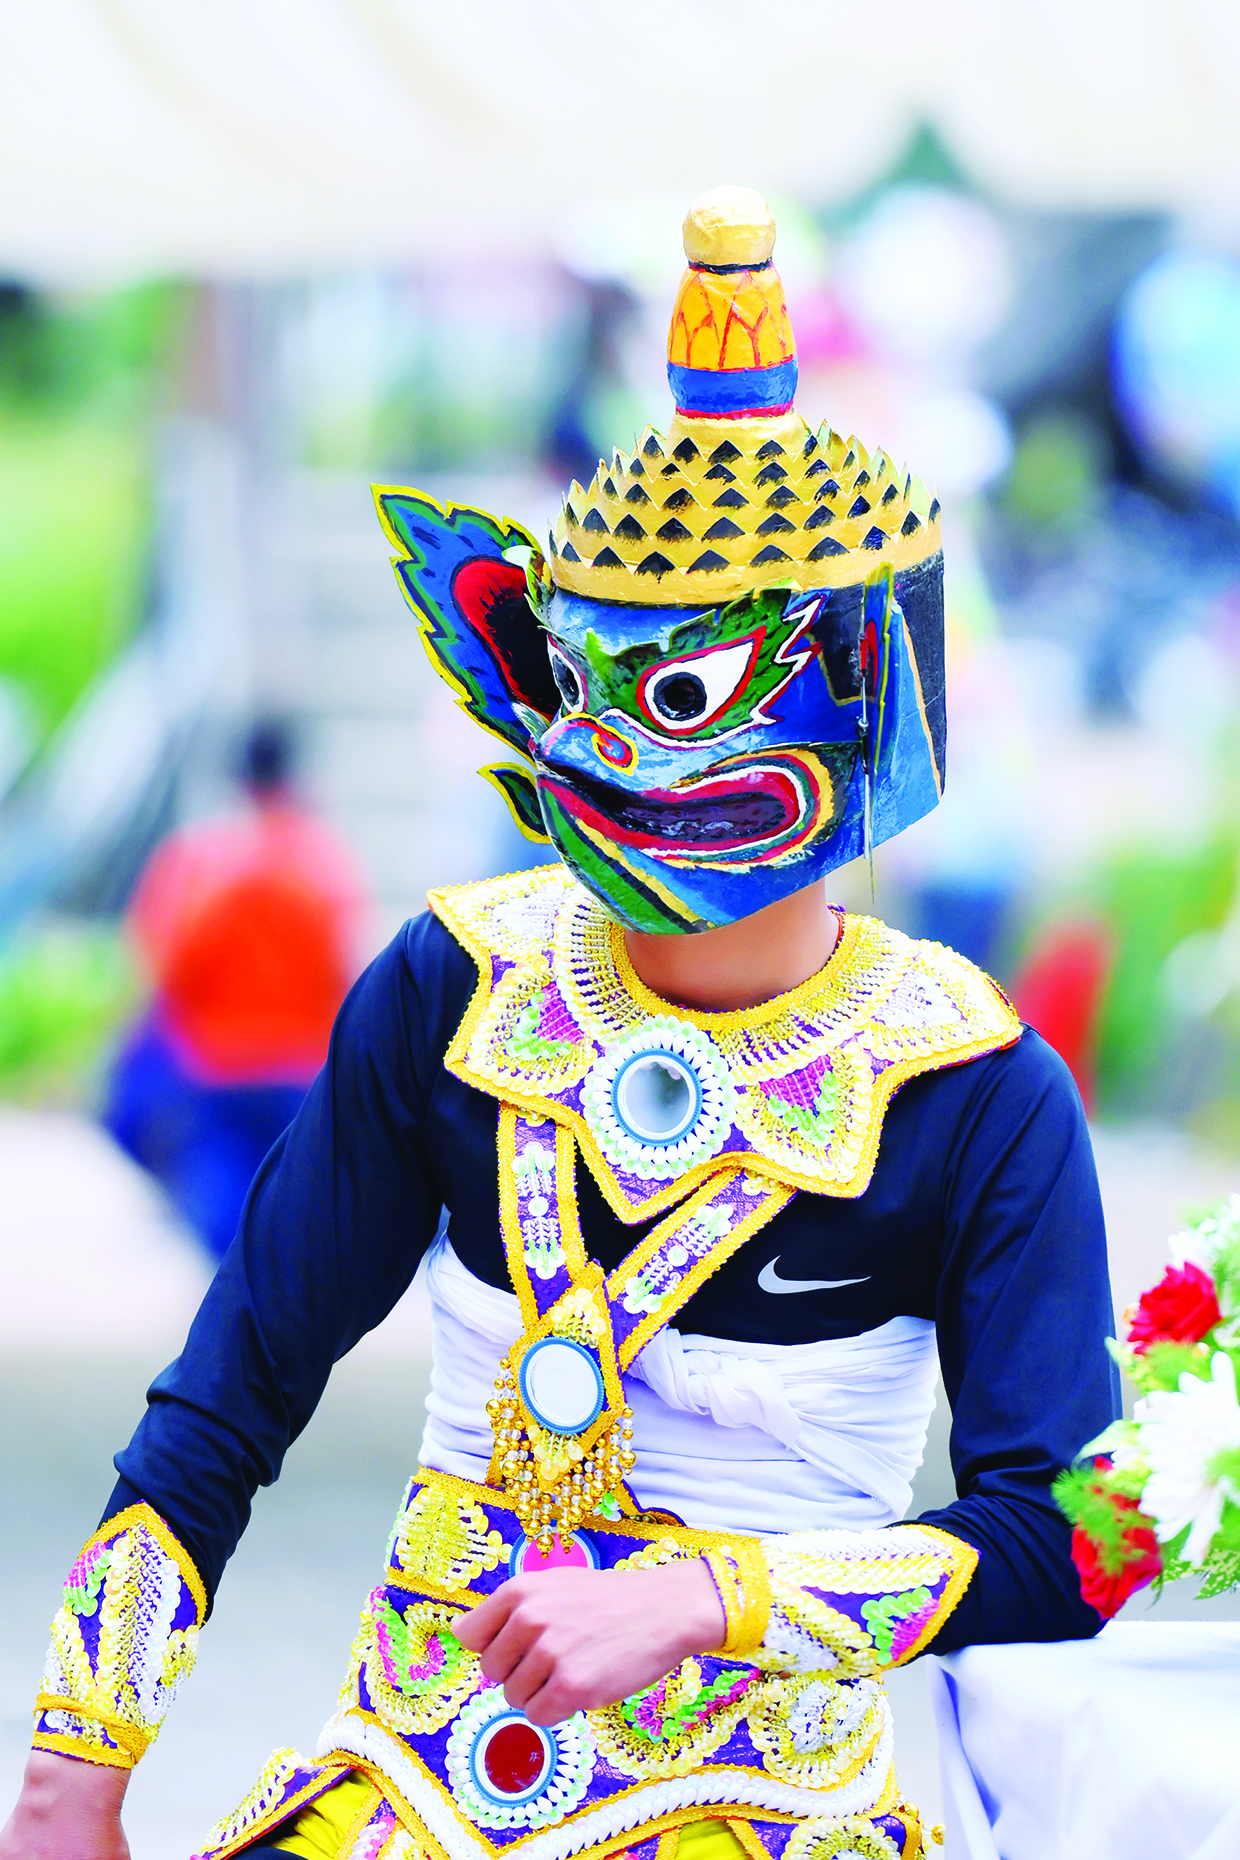 Lễ Kathina của người Khmer là một trong những lễ hội lớn nhất và được mong chờ nhất trong năm. Với nhiều hoạt động thú vị và lễ hội đầy màu sắc, người xem sẽ được đắm chìm trong không khí tươi vui và hạnh phúc. Hãy cùng tham gia và tận hưởng niềm vui của lễ hội này.